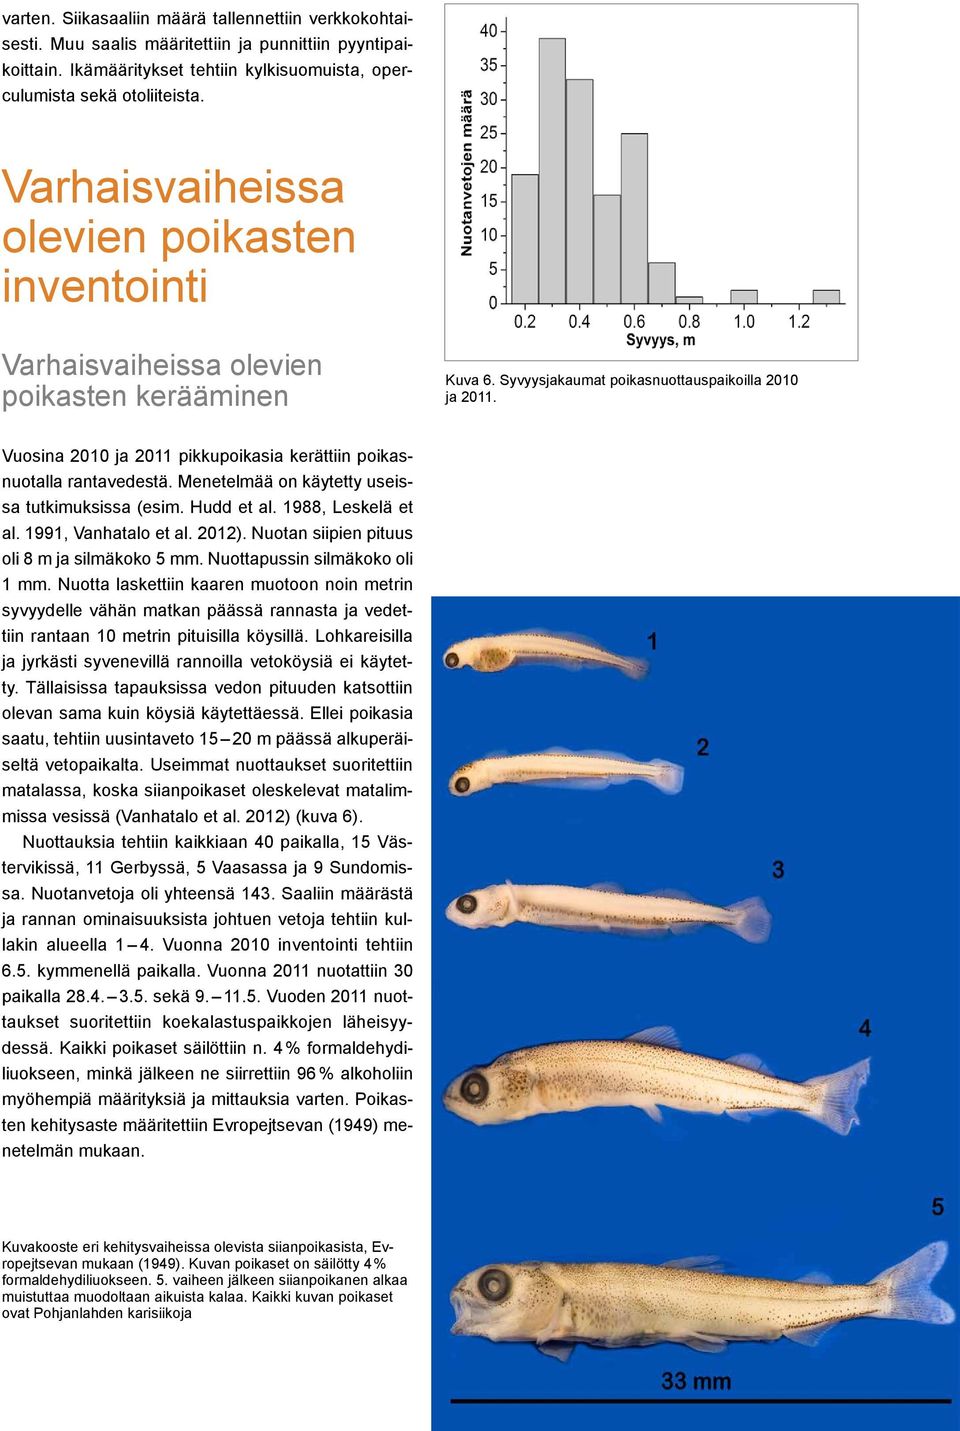 Vuosina 2010 ja 2011 pikkupoikasia kerättiin poikasnuotalla rantavedestä. Menetelmää on käytetty useissa tutkimuksissa (esim. Hudd et al. 1988, Leskelä et al. 1991, Vanhatalo et al. 2012).